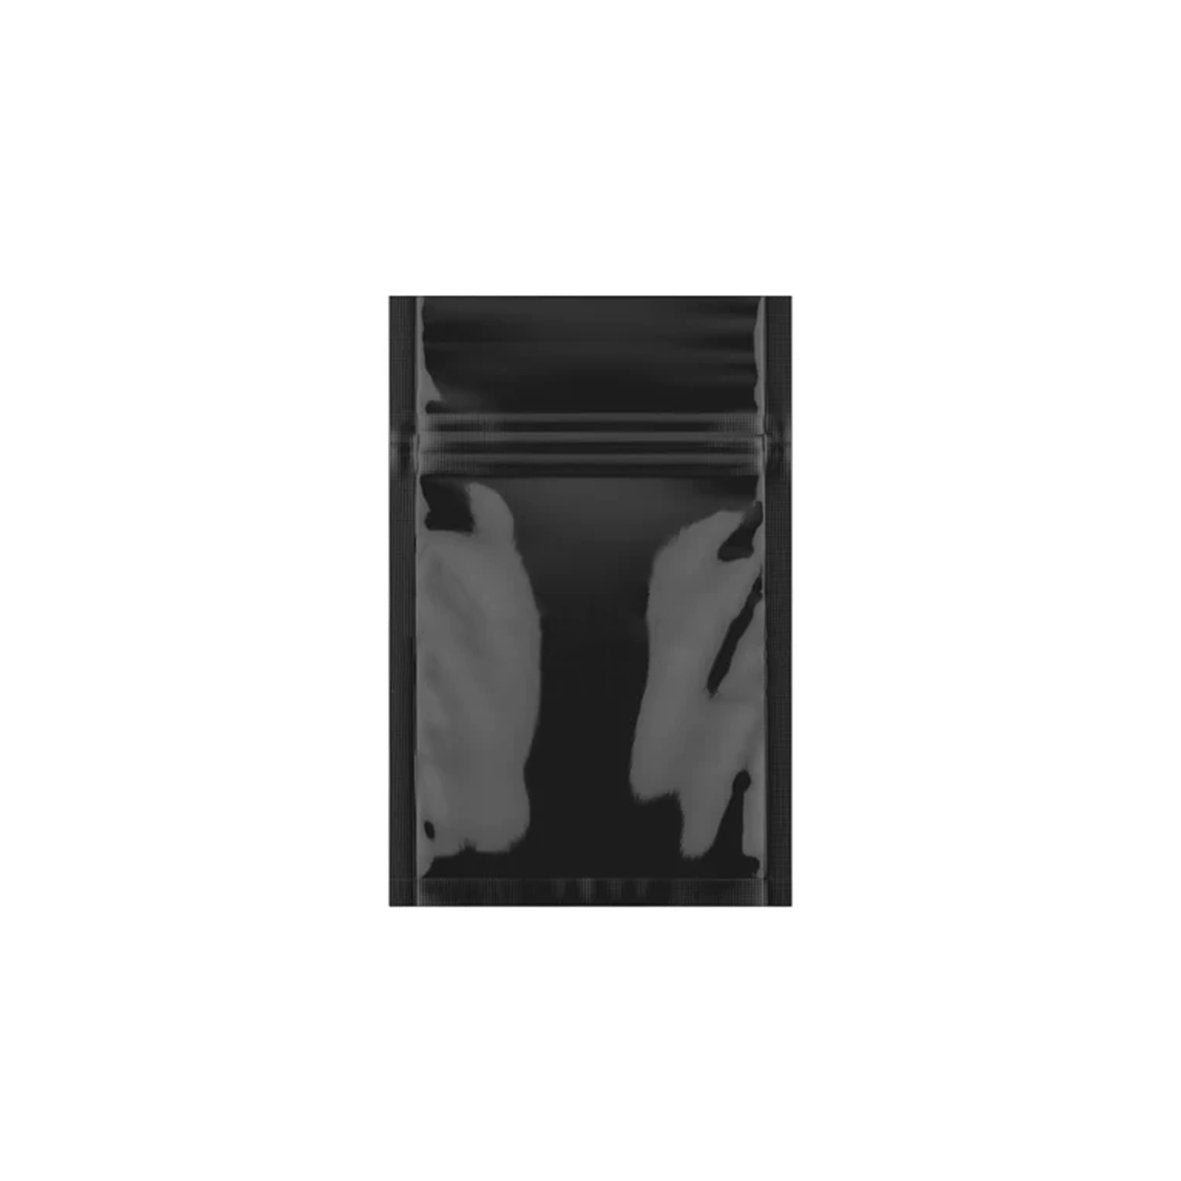 SLAPSTA - Eighth Ounce (3.5g) Single Seal Mylar Bags Black / Clear